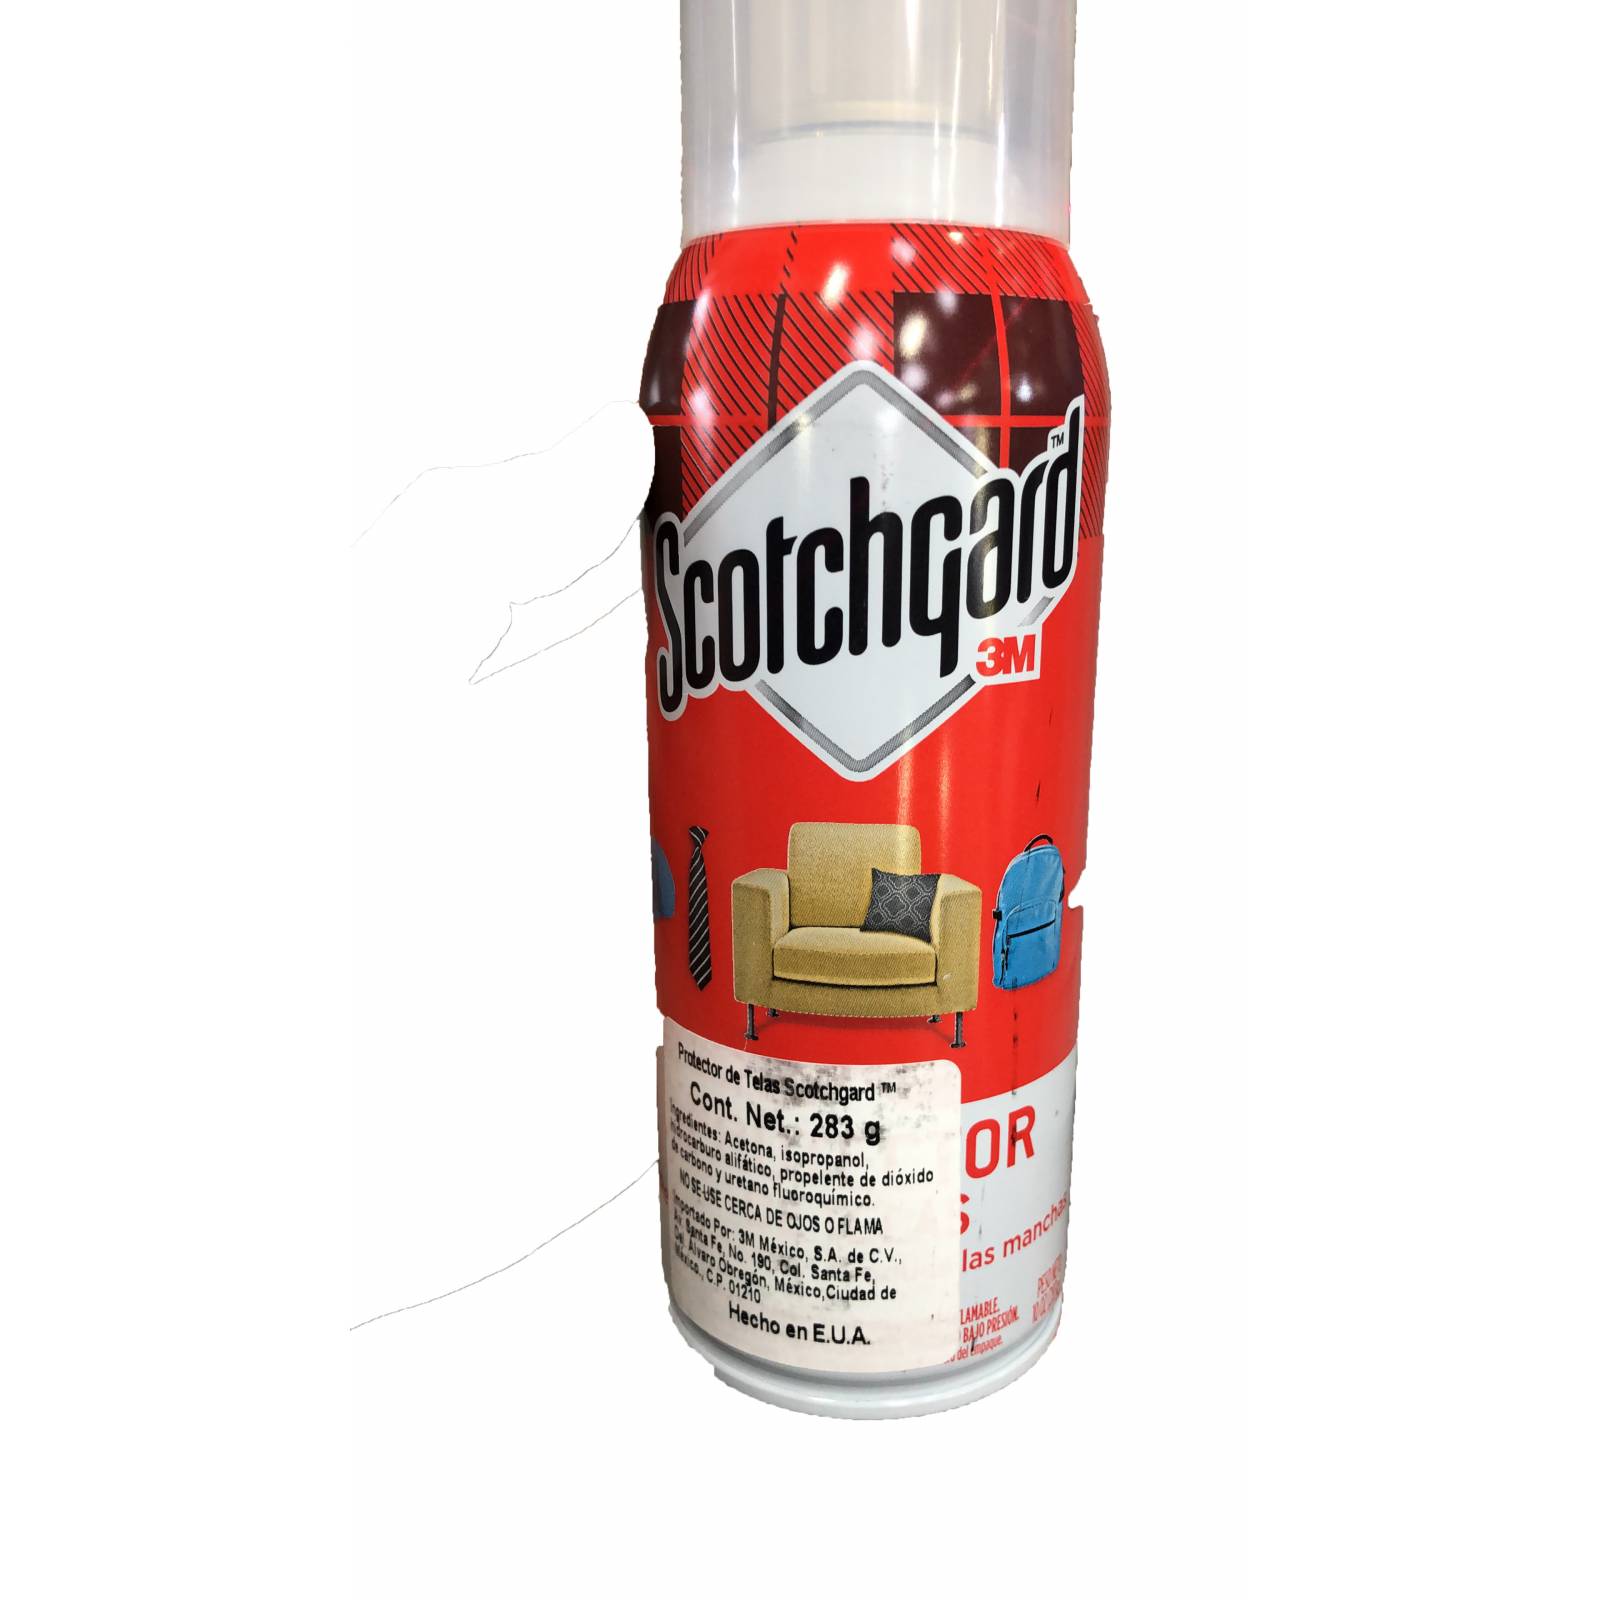 Scotchgard 3M, Limpiador de telas, fabricas, tapetes, alfombras, en aerosol. Con tecnología anti-manchas.